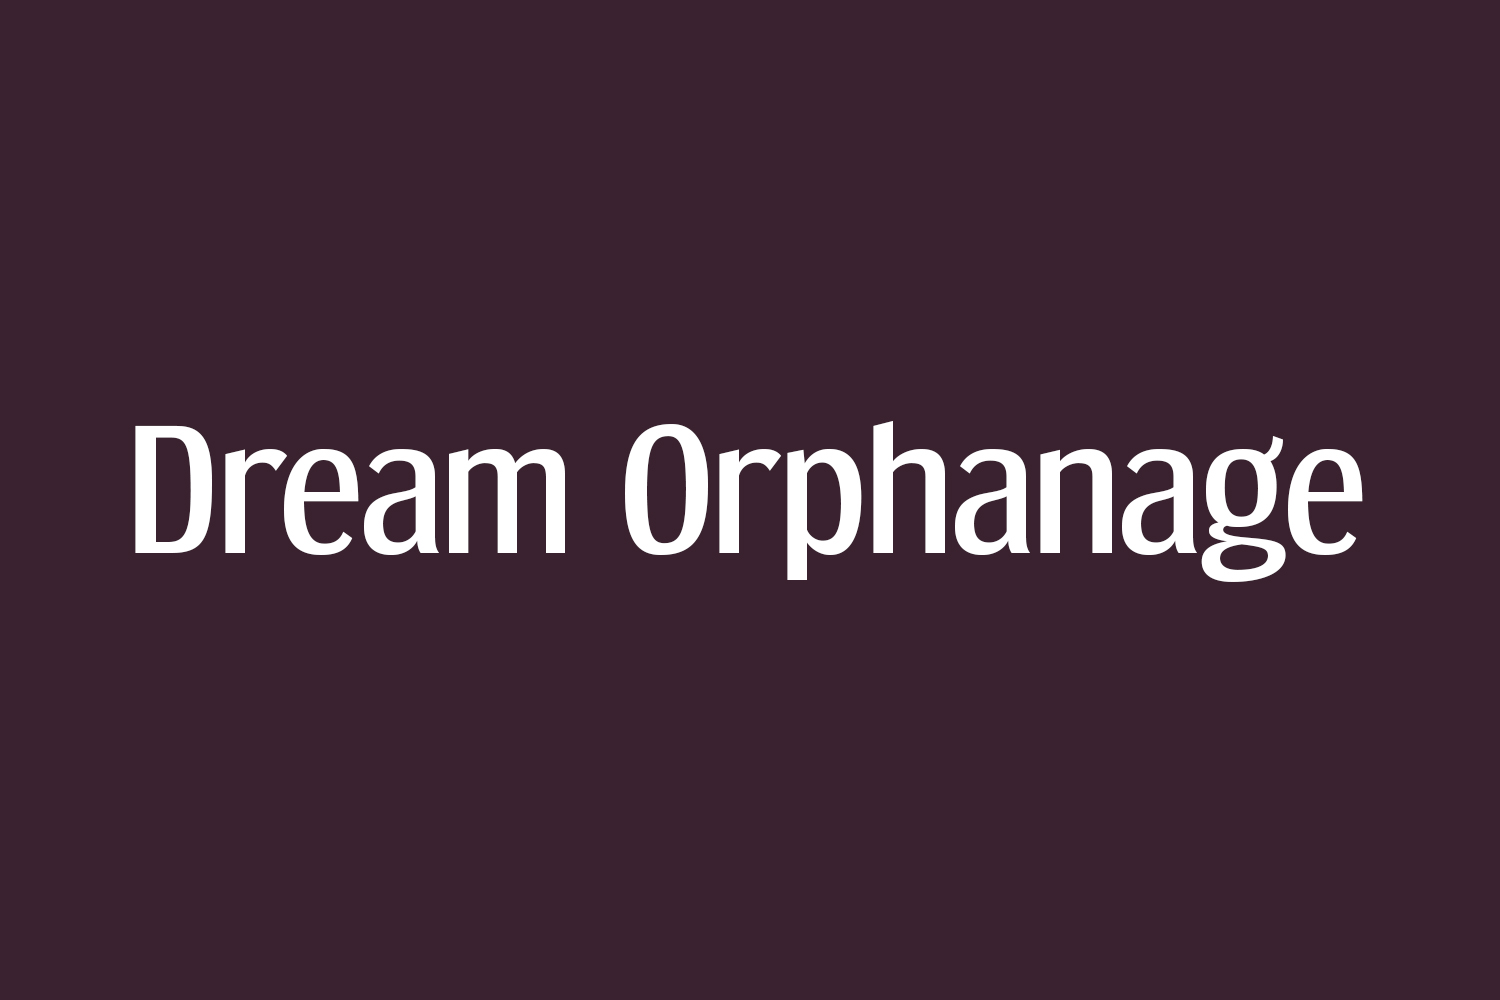 Dream Orphanage Font - A Friendly Sans-Serif Typeface